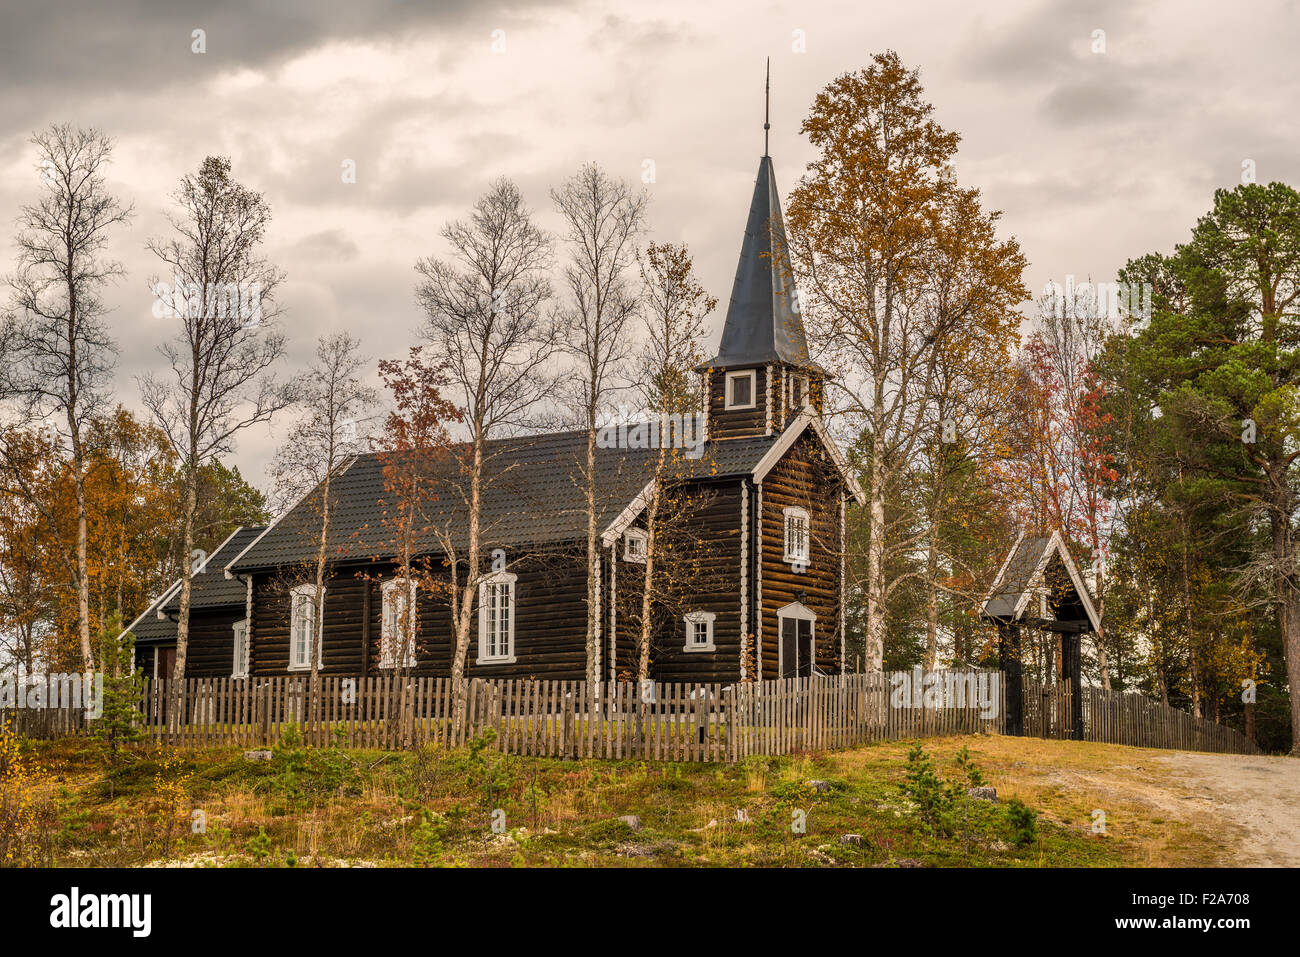 L'église historique à Somadal, Hedmark, Norvège situé dans un cadre d'automne. Banque D'Images